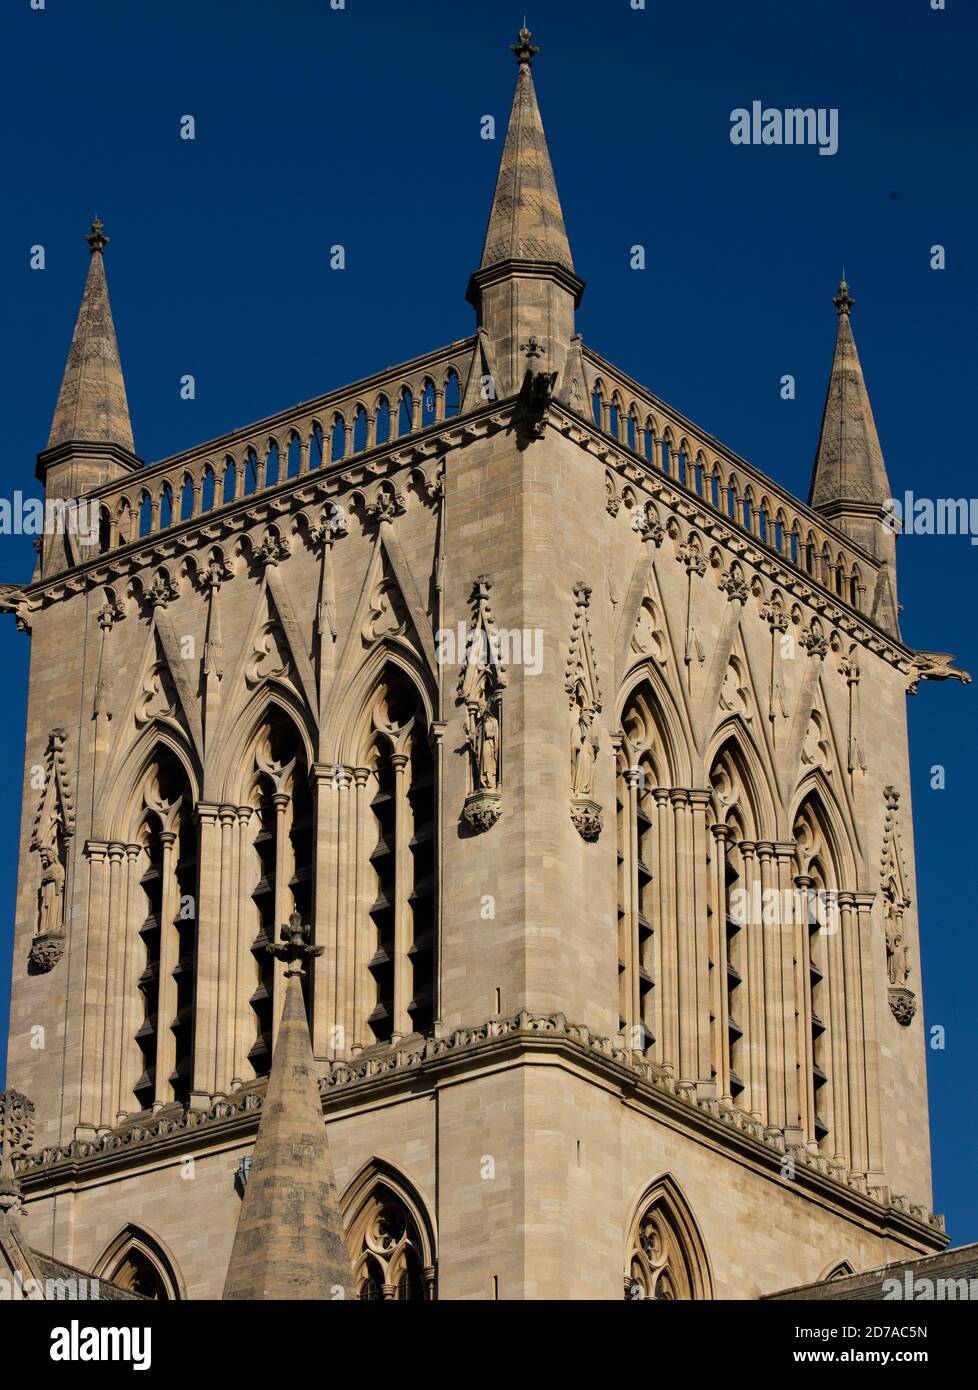 St Johns College, la torre della cappella è una caratteristica iconica dello skyline di Cambridge. Inghilterra, Regno Unito Foto Stock